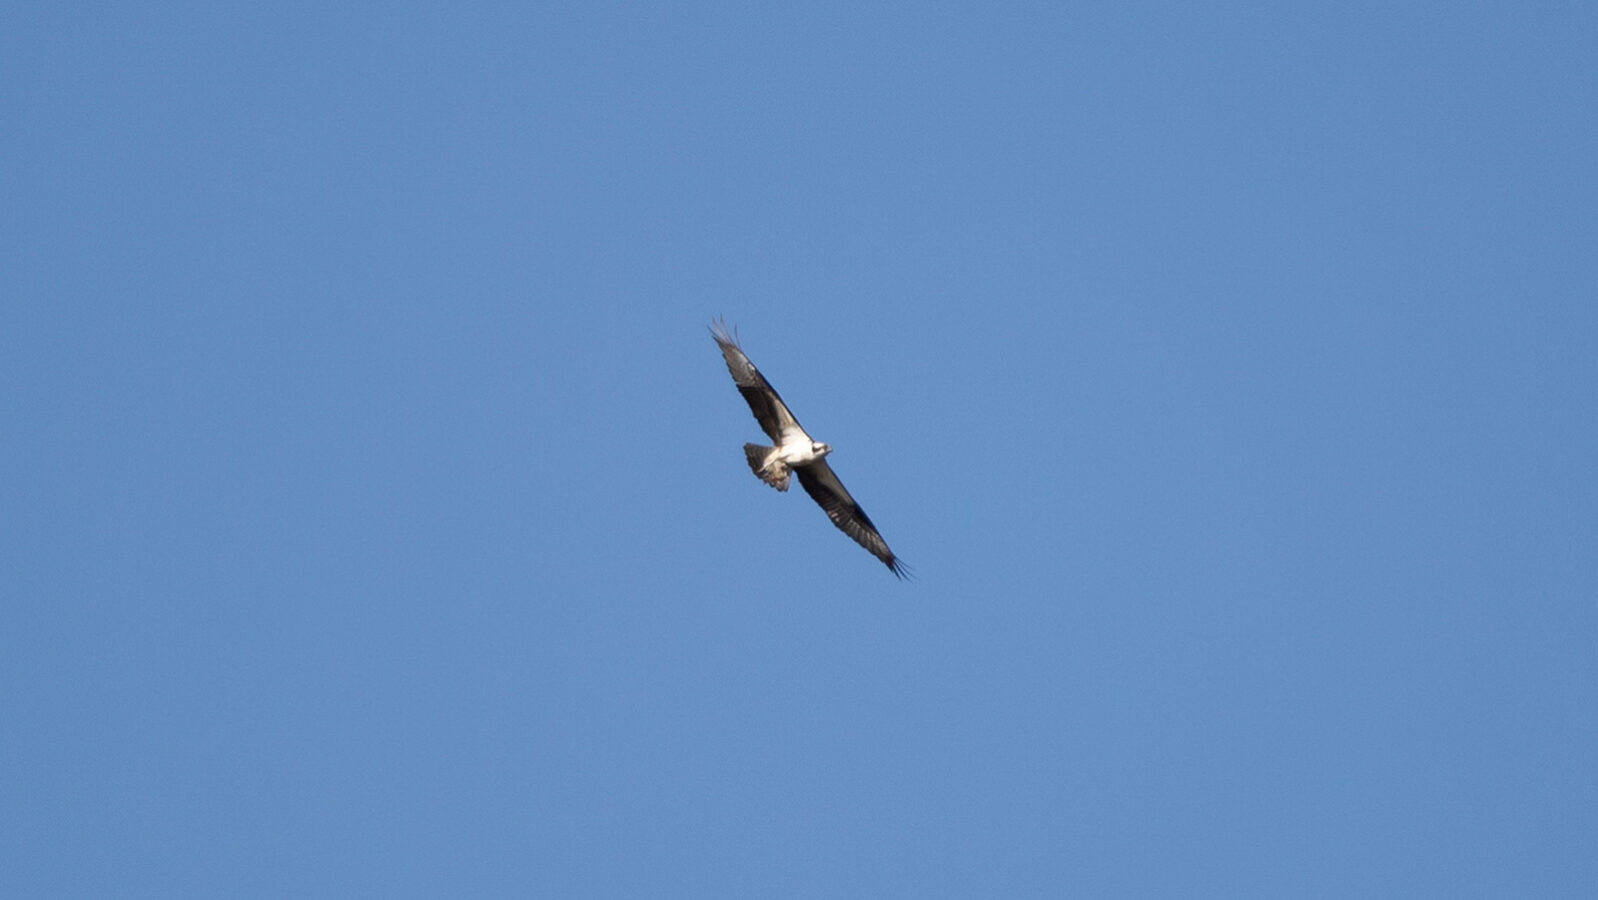 Osprey soaring through blue sky